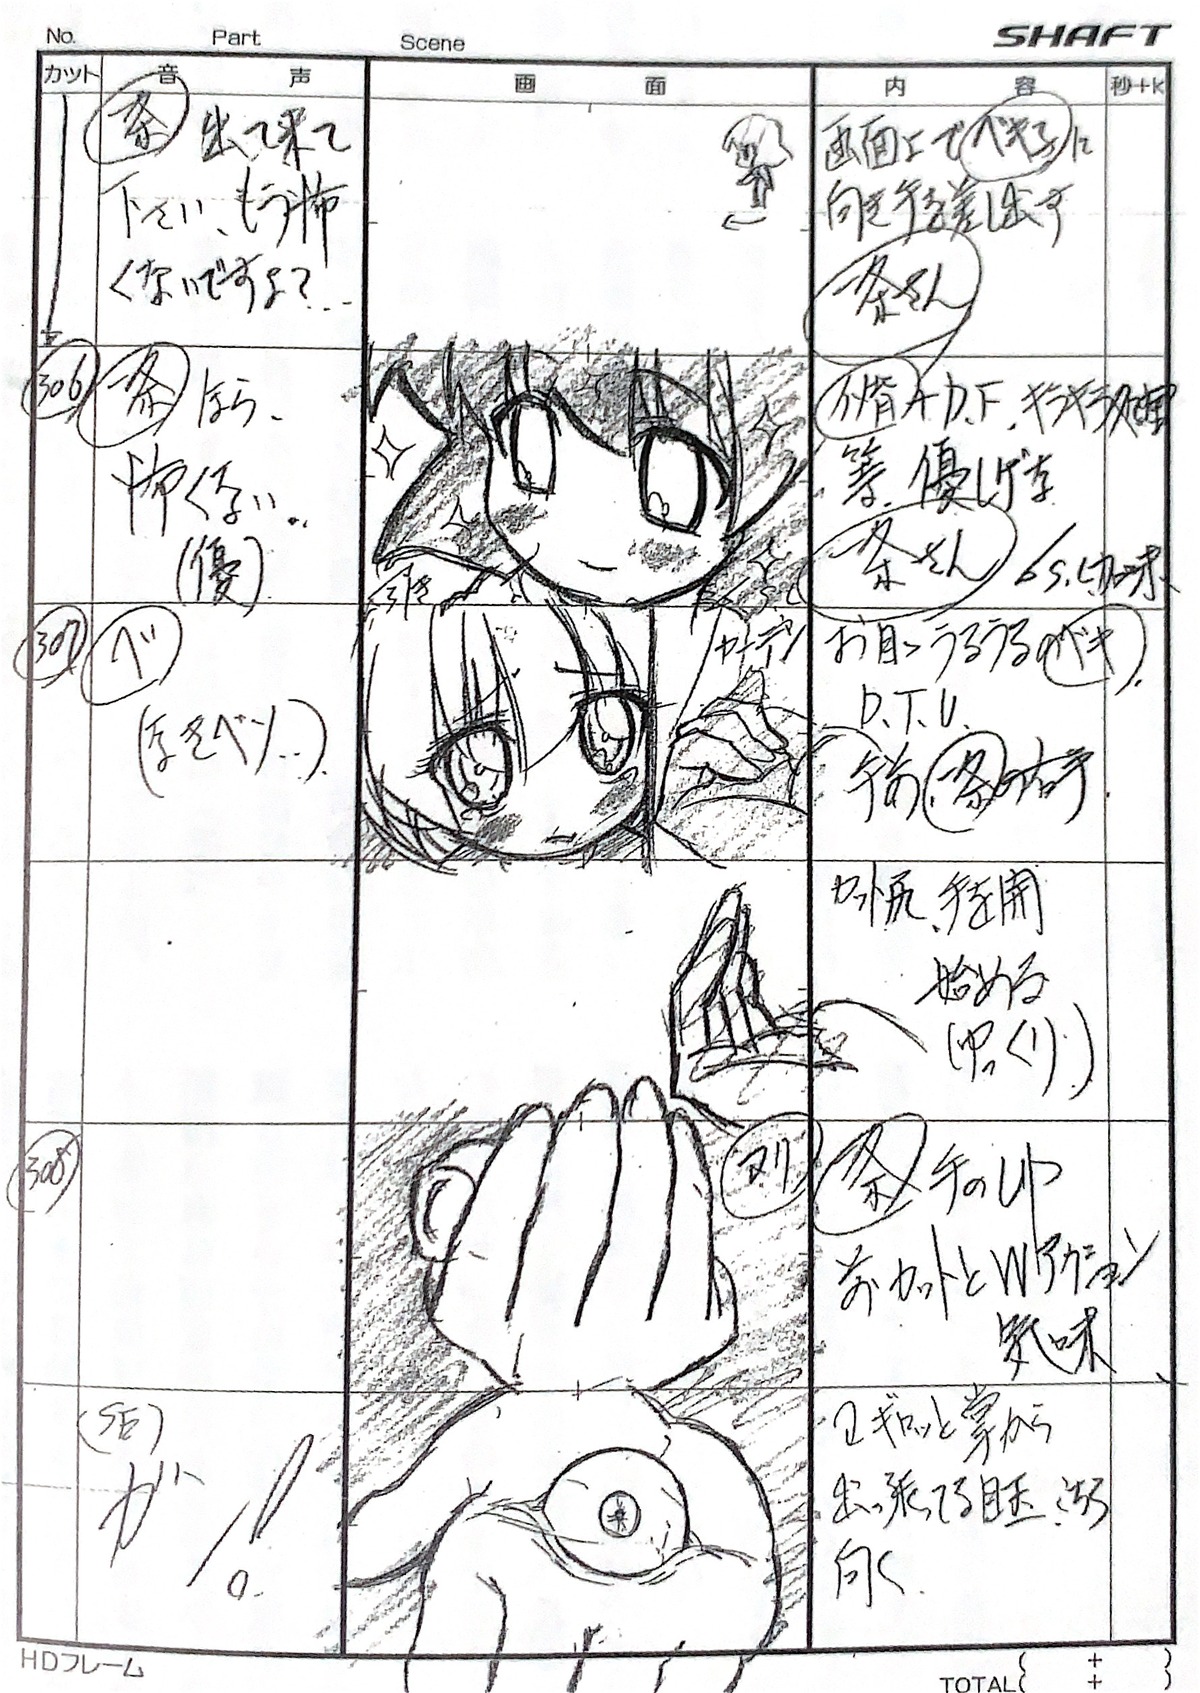 kazuhiro_ota paniponi_dash production_materials storyboard